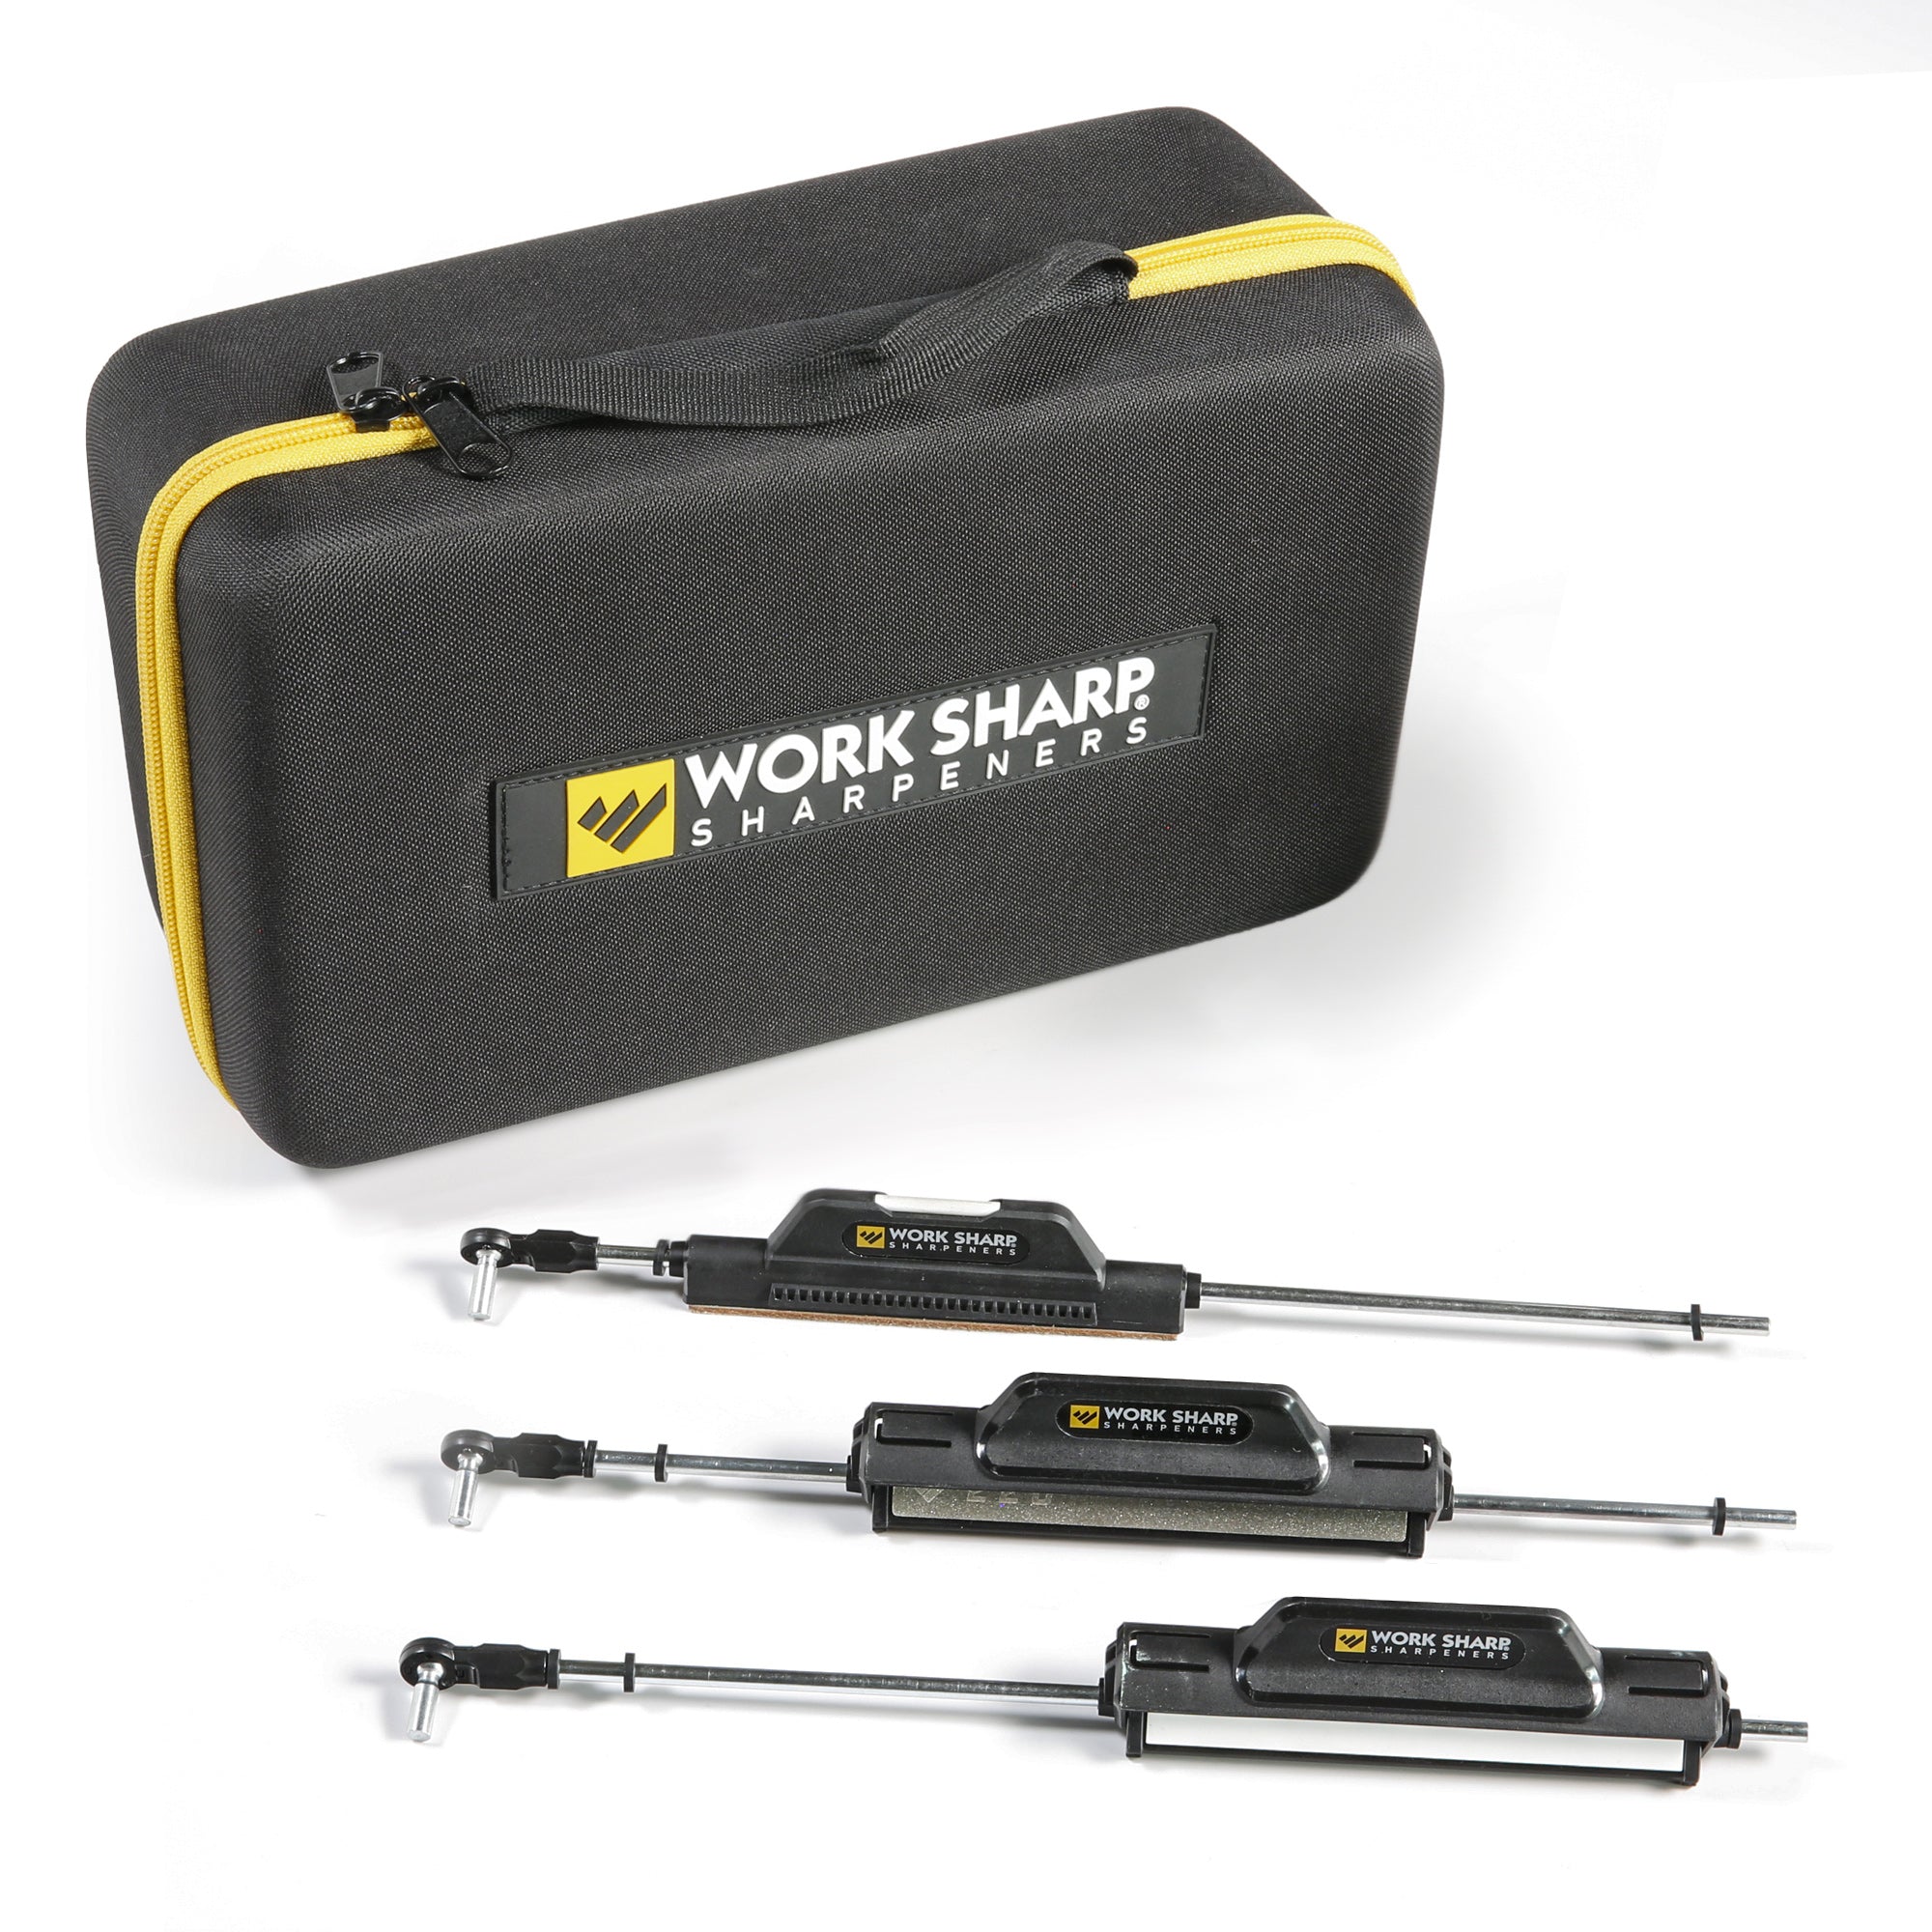 Upgrade Kit for Precision Adjust™ Knife Sharpener - Work Sharp Sharpeners